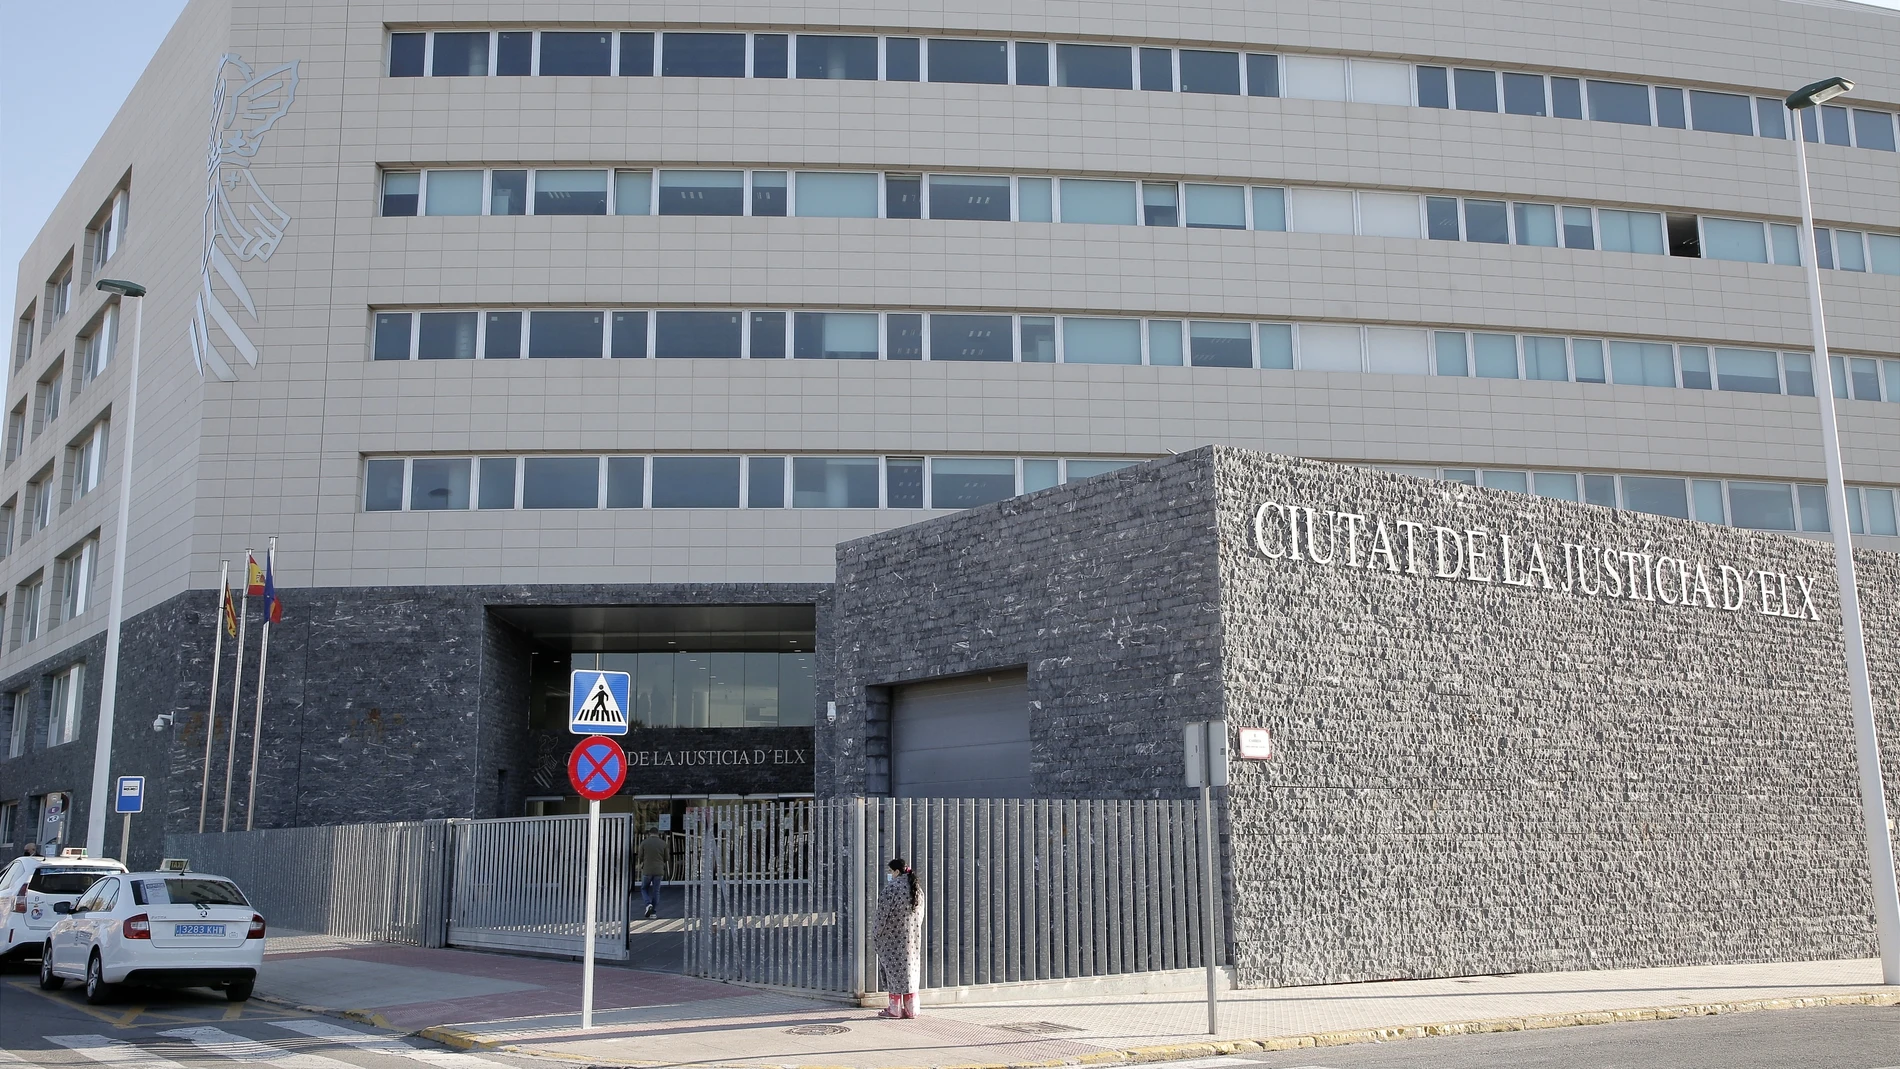 Fachada de la Ciutat de la Justicia de la Audiencia de Alicante.